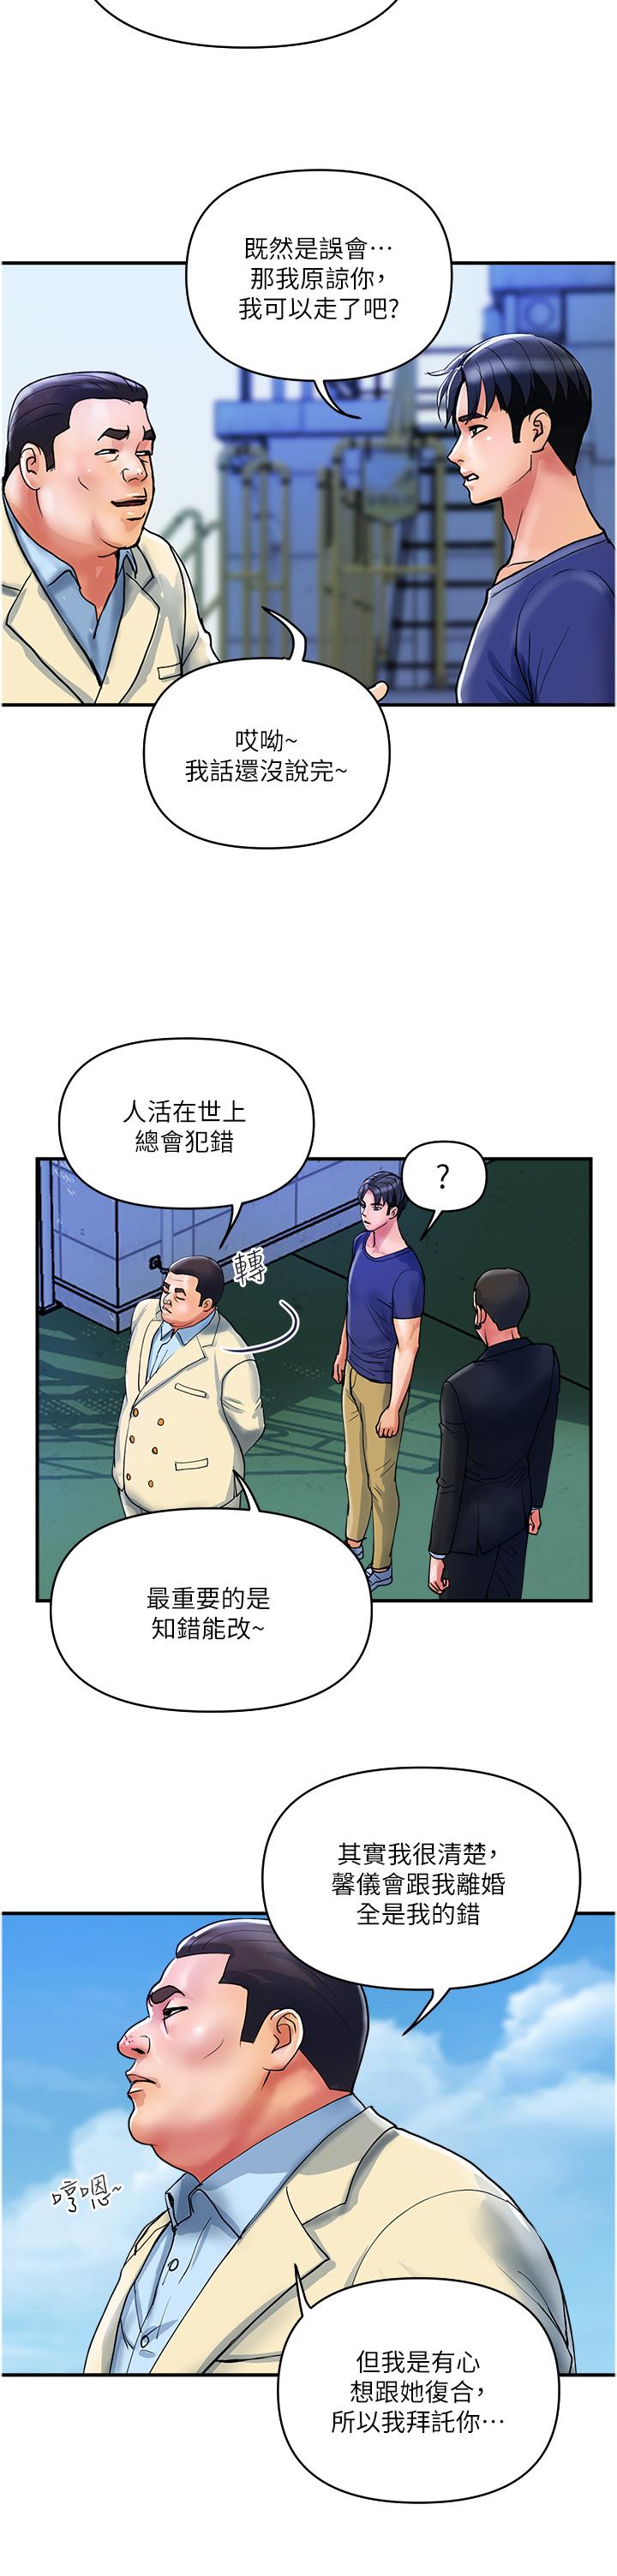 韩国污漫画 貴婦百貨 第20话-复杂的四角恋 23